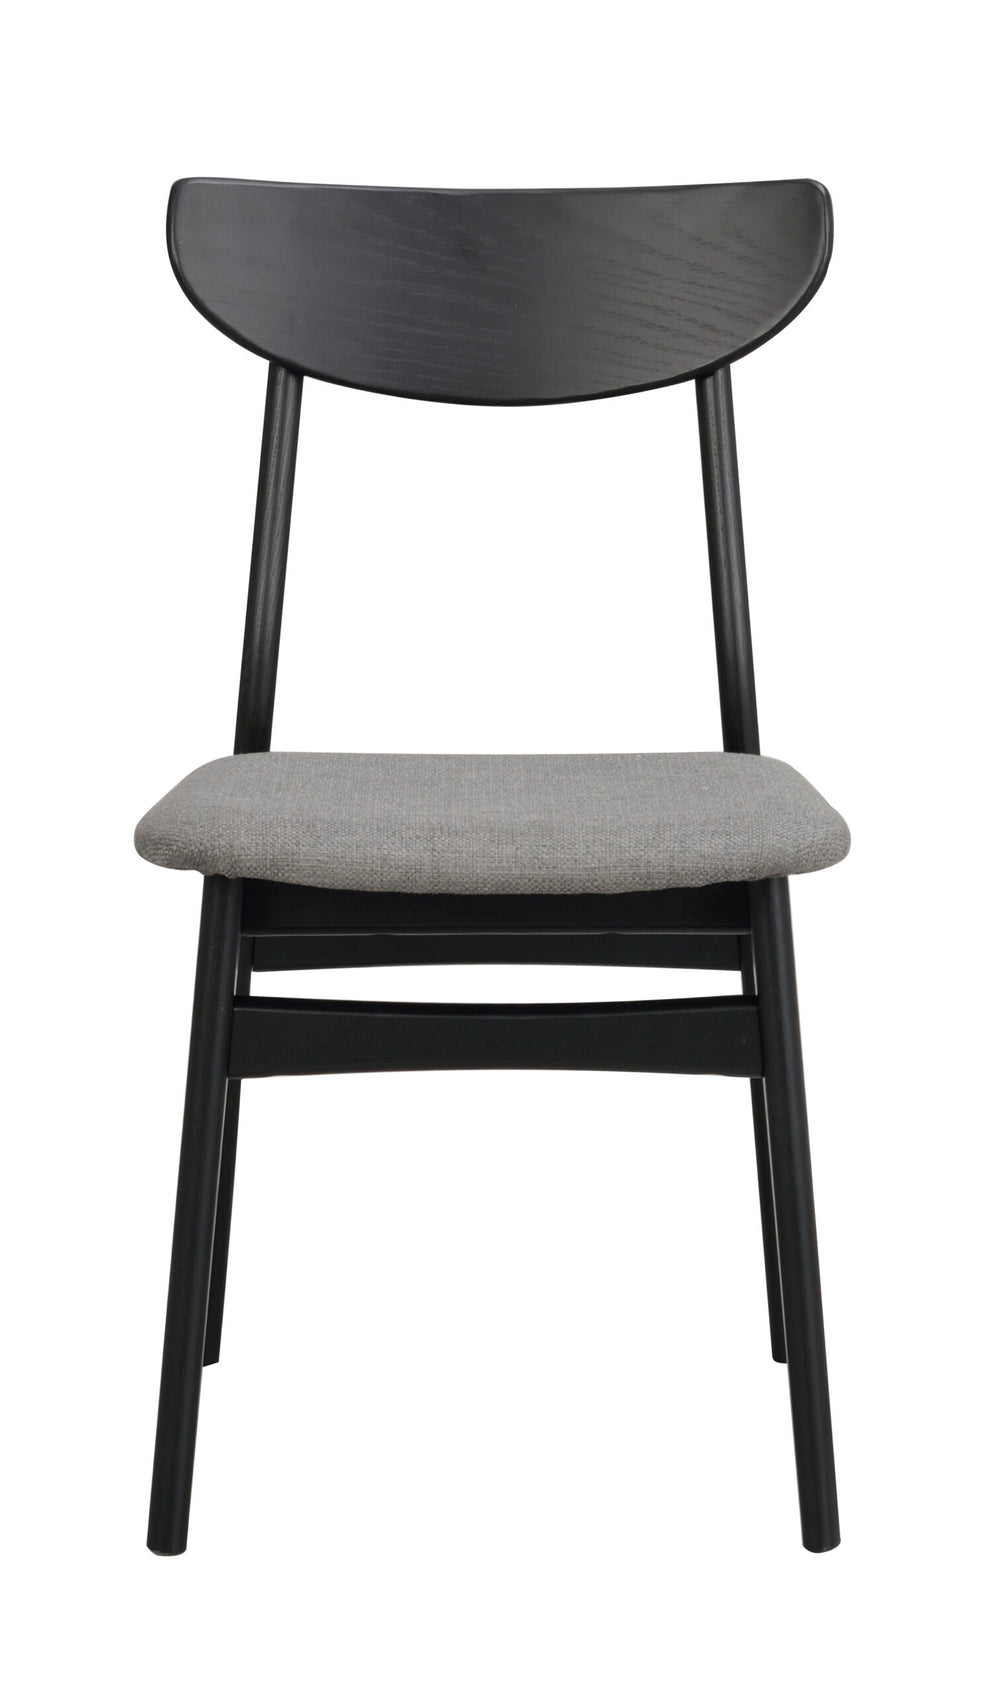 120068_a, Rodham chair, black_dark grey